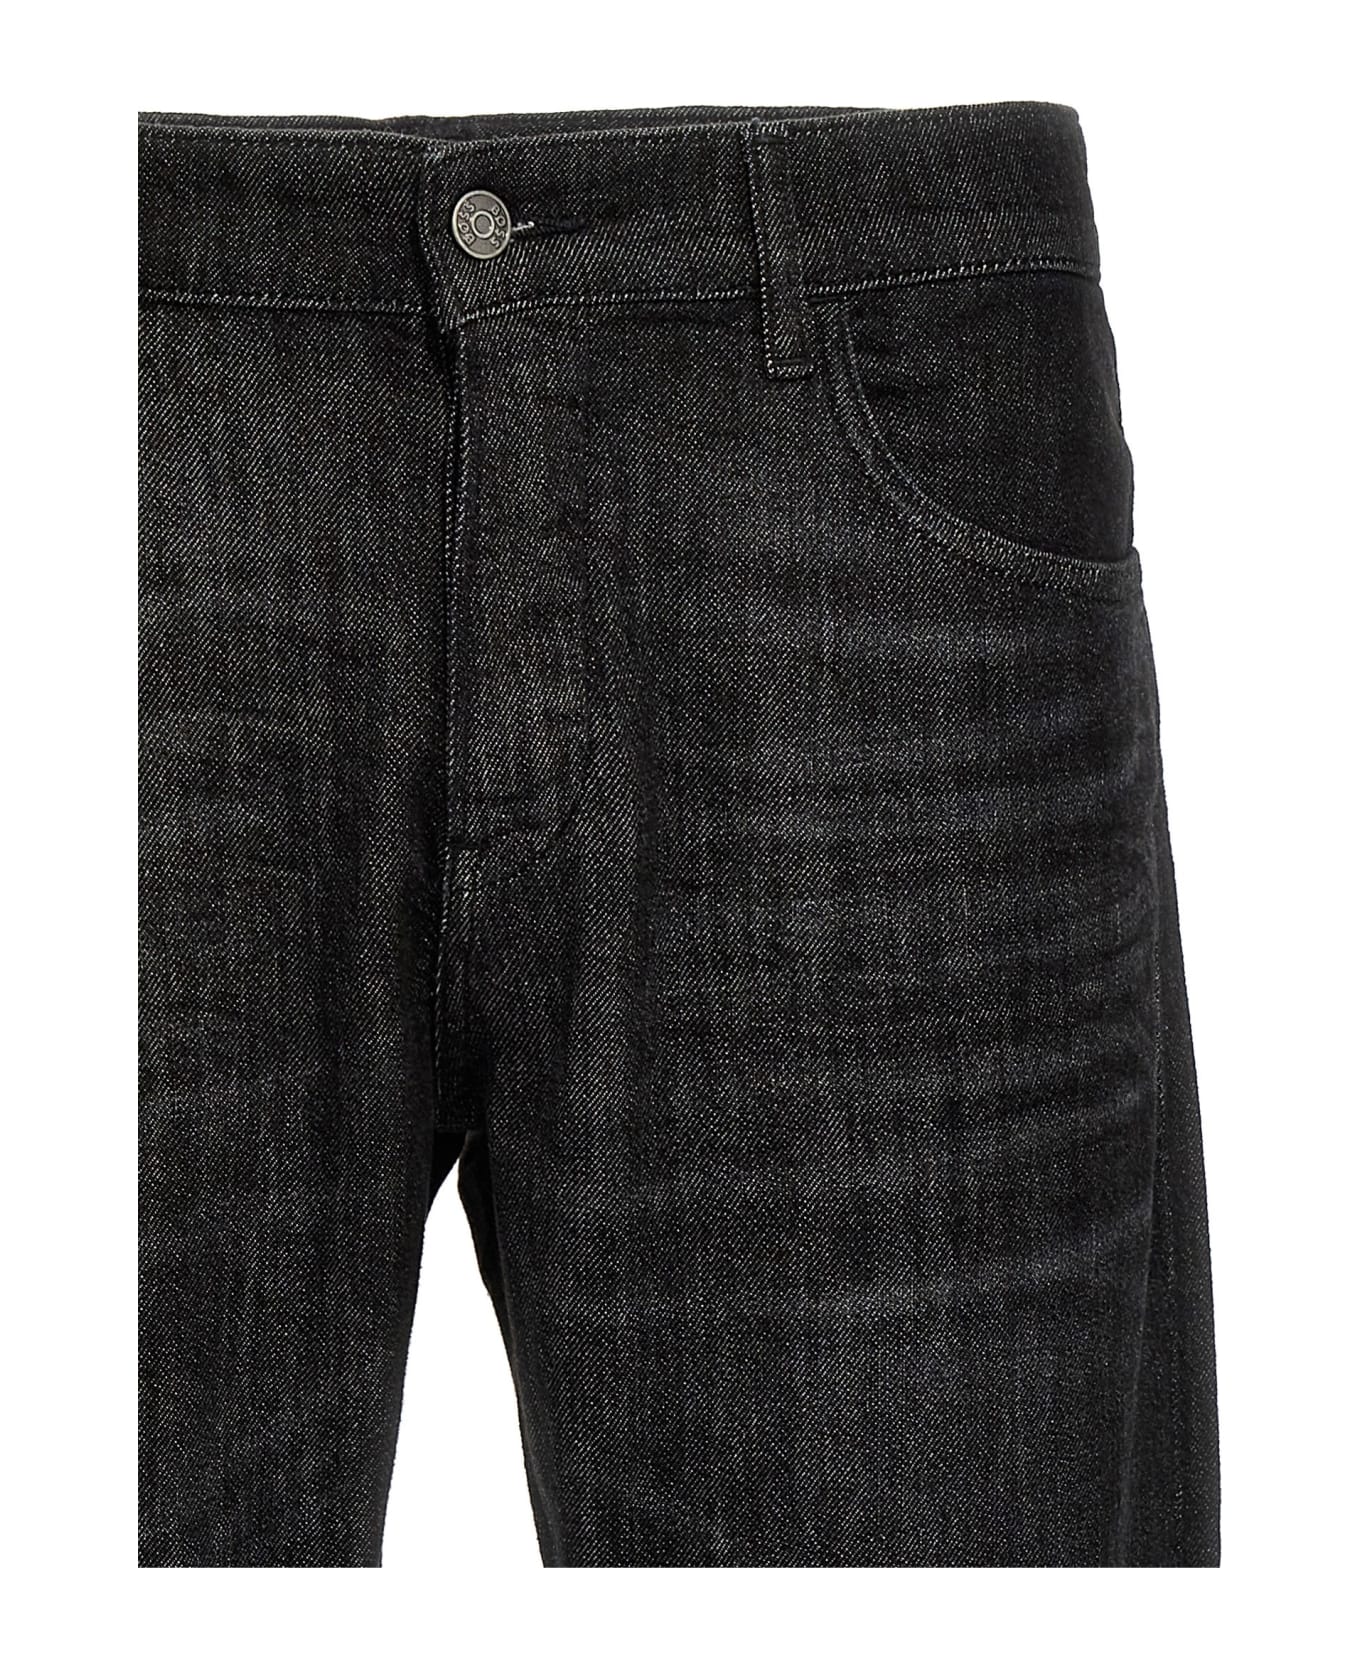 Hugo Boss 'delaware' Jeans - Black   デニム